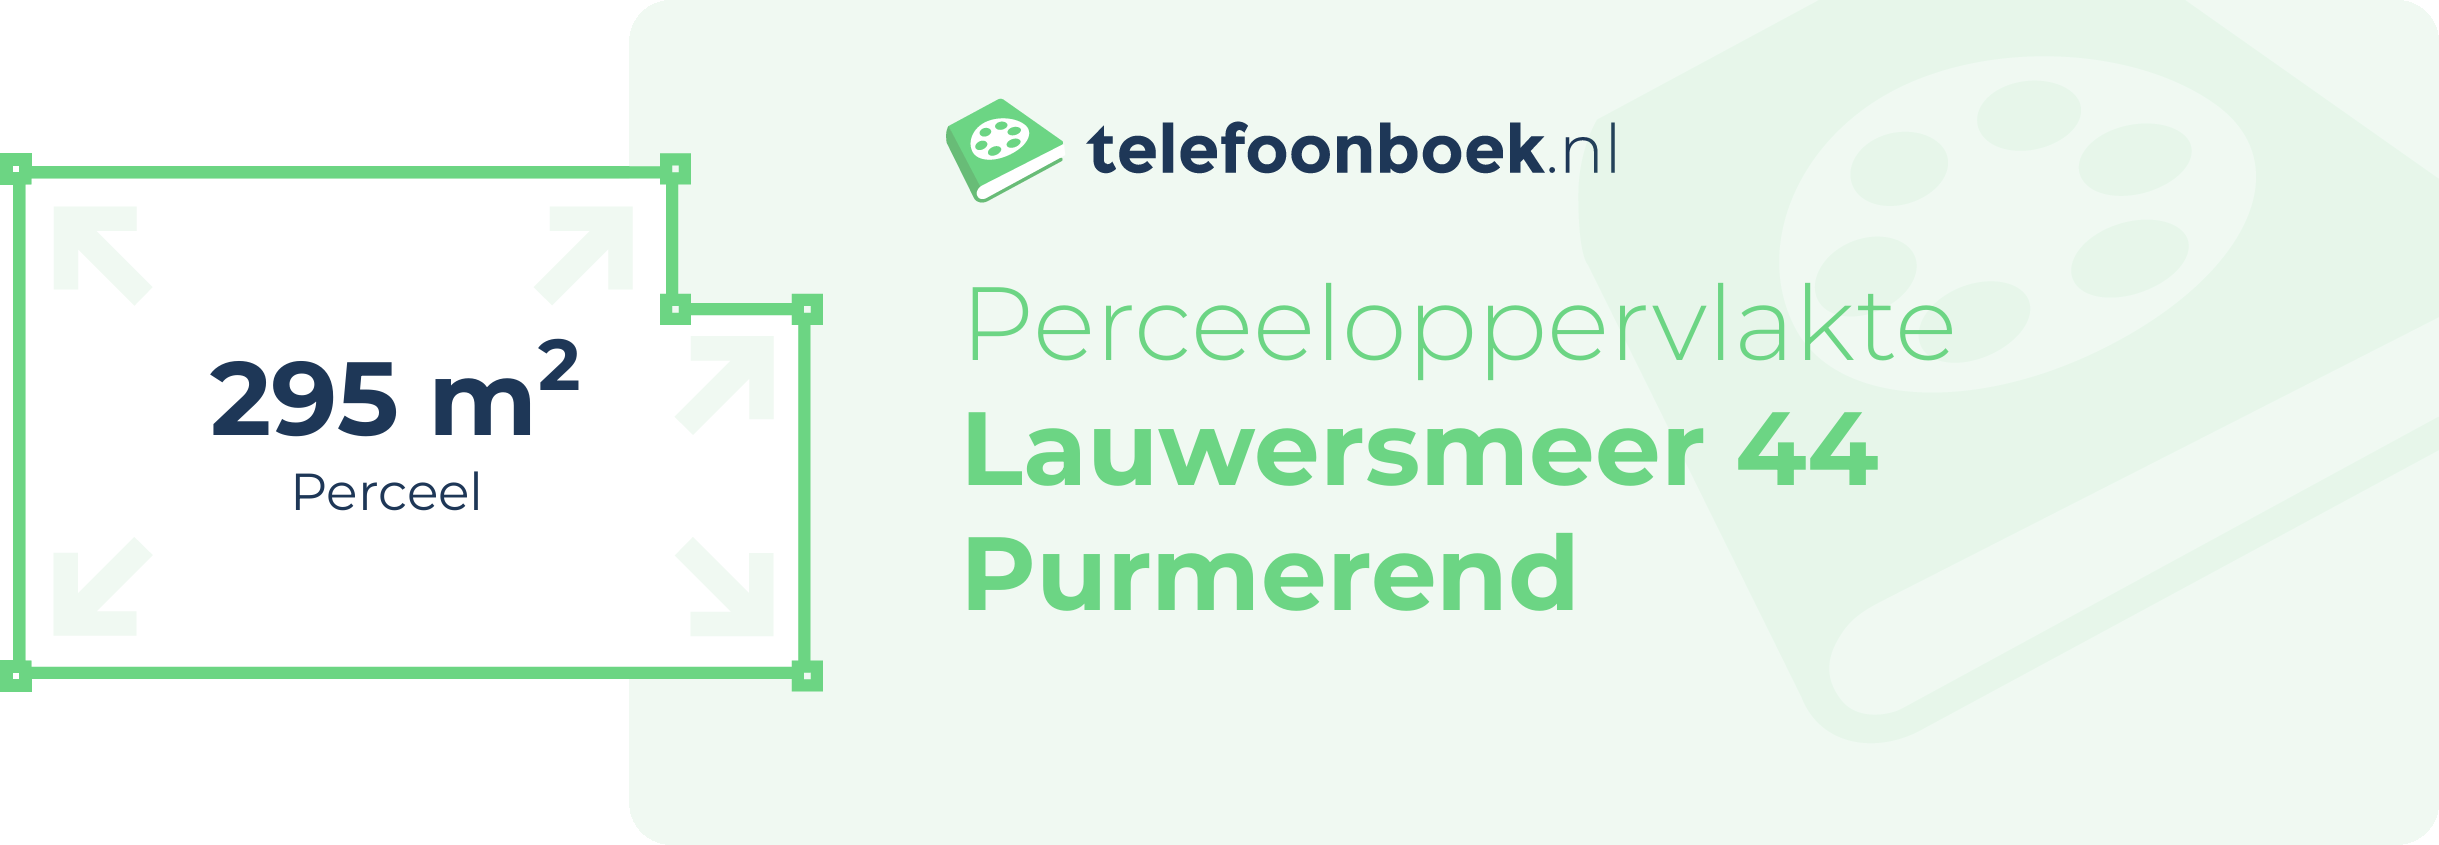 Perceeloppervlakte Lauwersmeer 44 Purmerend